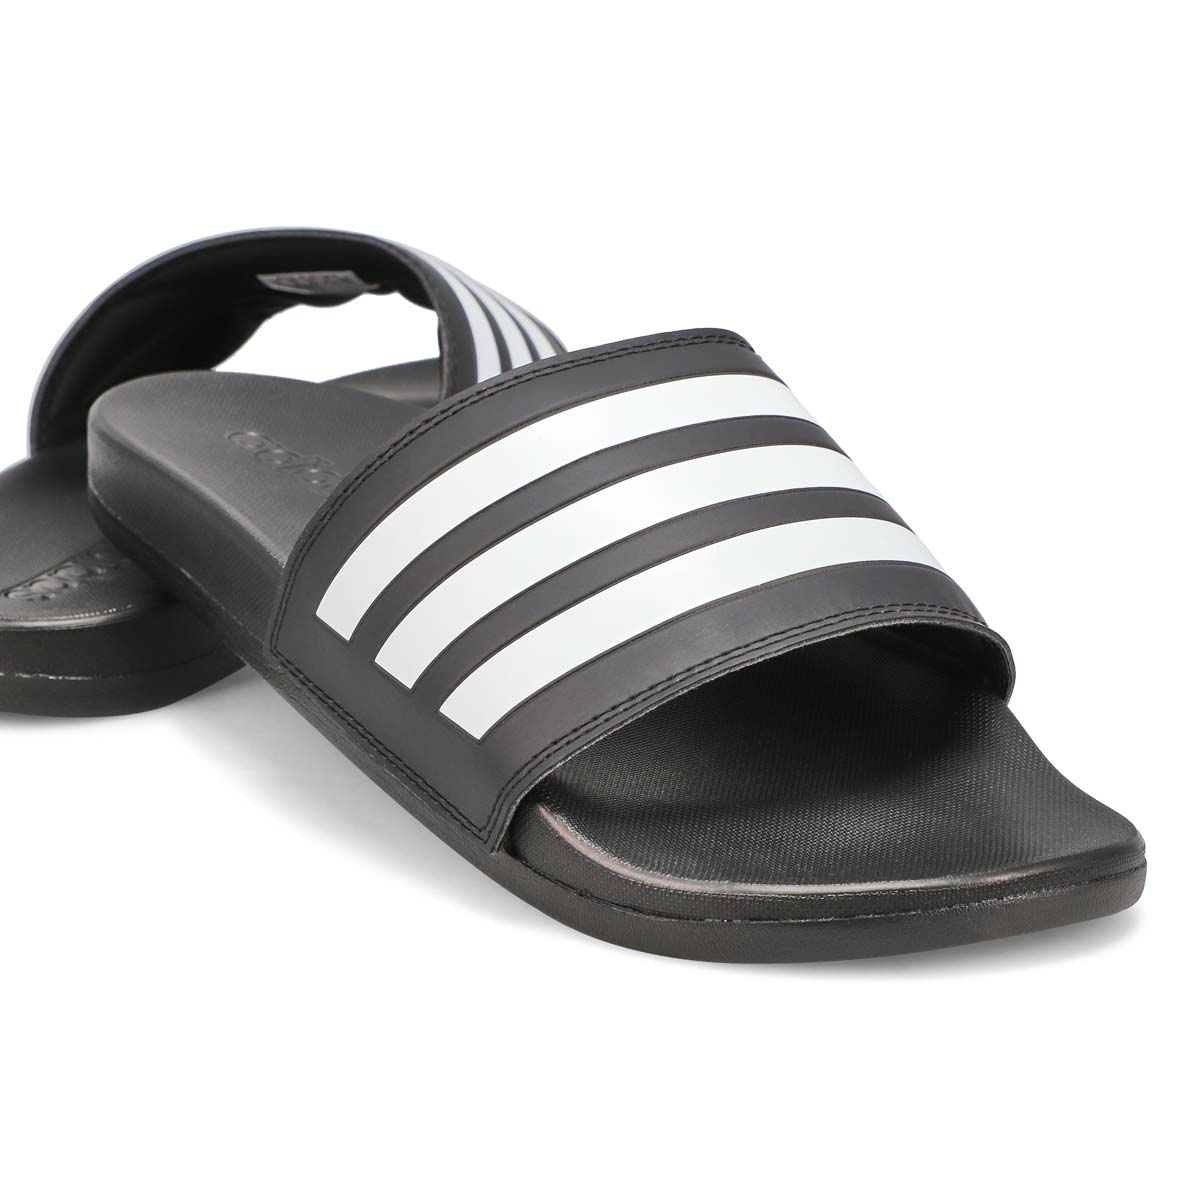 Mens' Adilette Comfort Sandal - Black/White